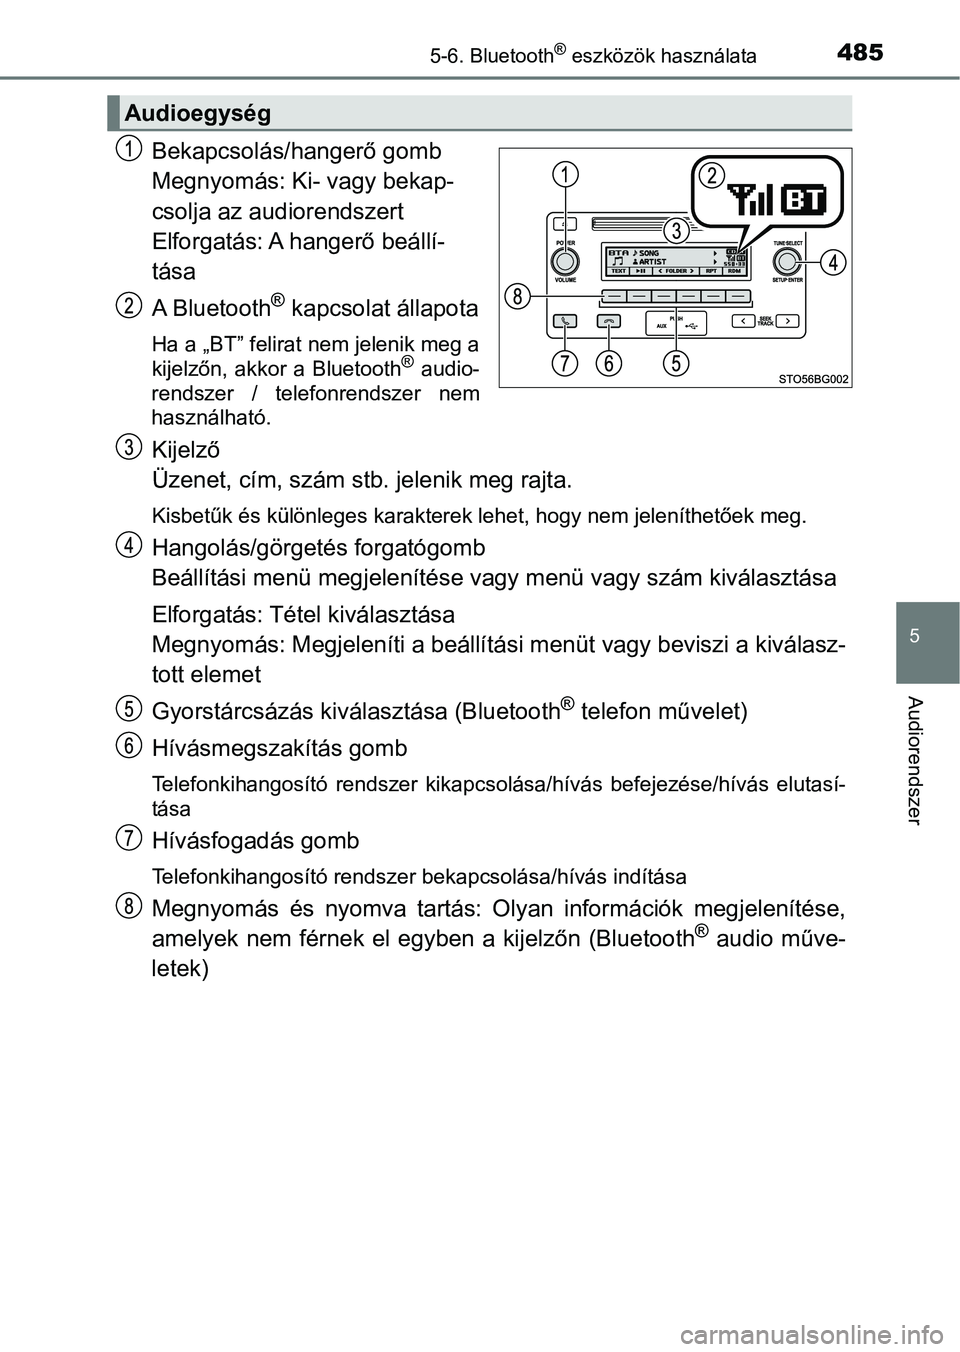 TOYOTA C-HR 2018  Kezelési útmutató (in Hungarian) 4855-6. Bluetooth® eszközök használata
5
Audiorendszer
Bekapcsolás/hangerő gomb
Megnyomás: Ki- vagy bekap-
csolja az audiorendszert
Elforgatás: A hangerő beállí-
tása
A Bluetooth
® kapcso